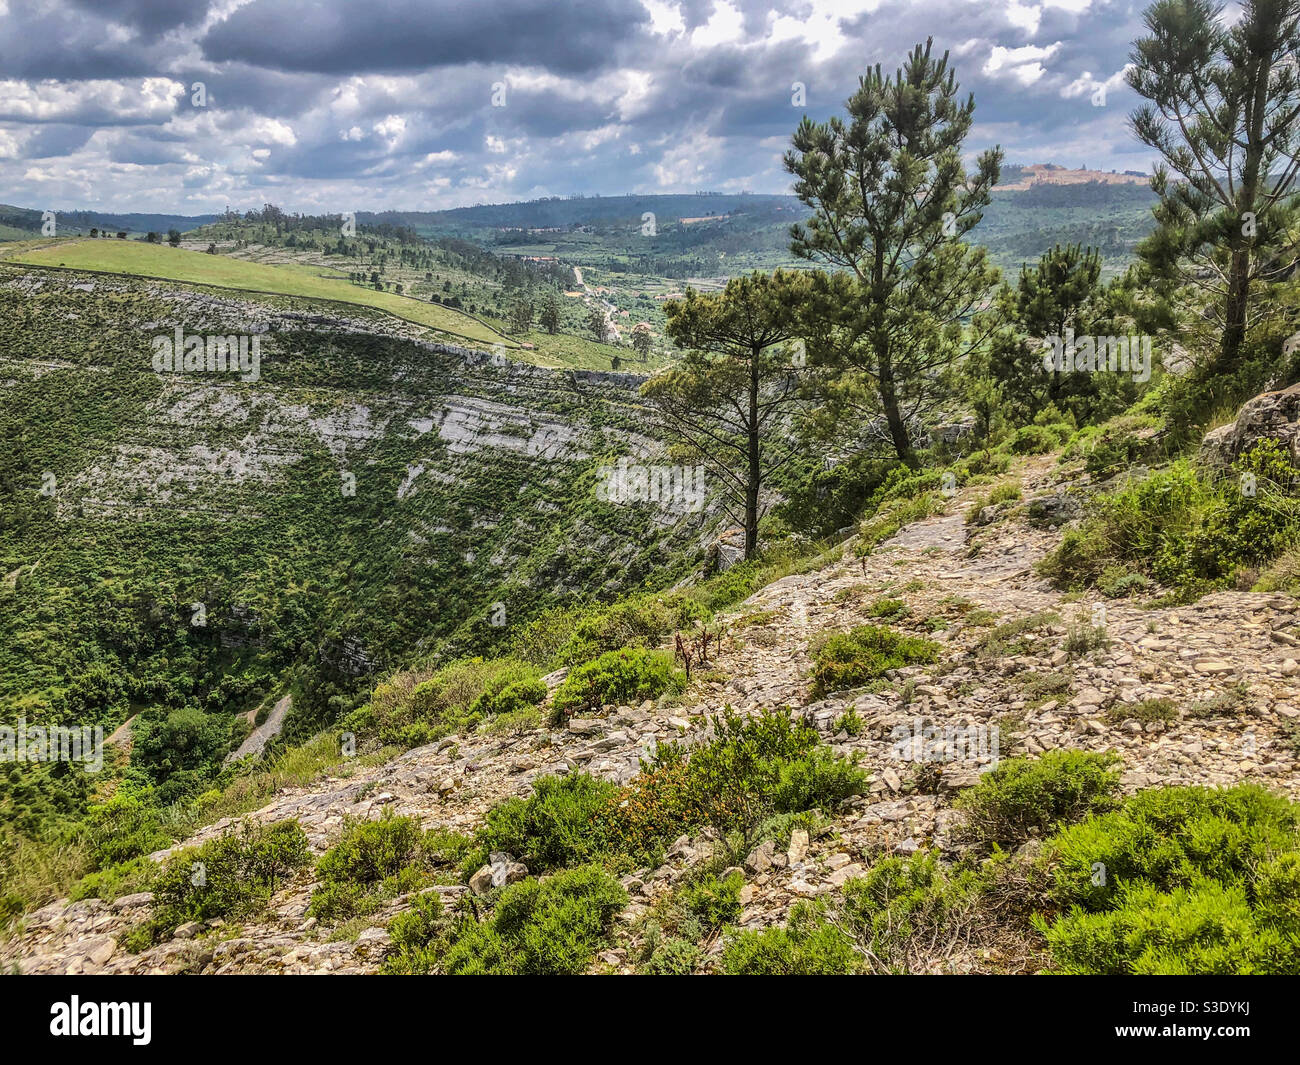 Die Landschaft um Fórnea, Porto de Mòs, Portugal - Mai 2020 Stockfoto